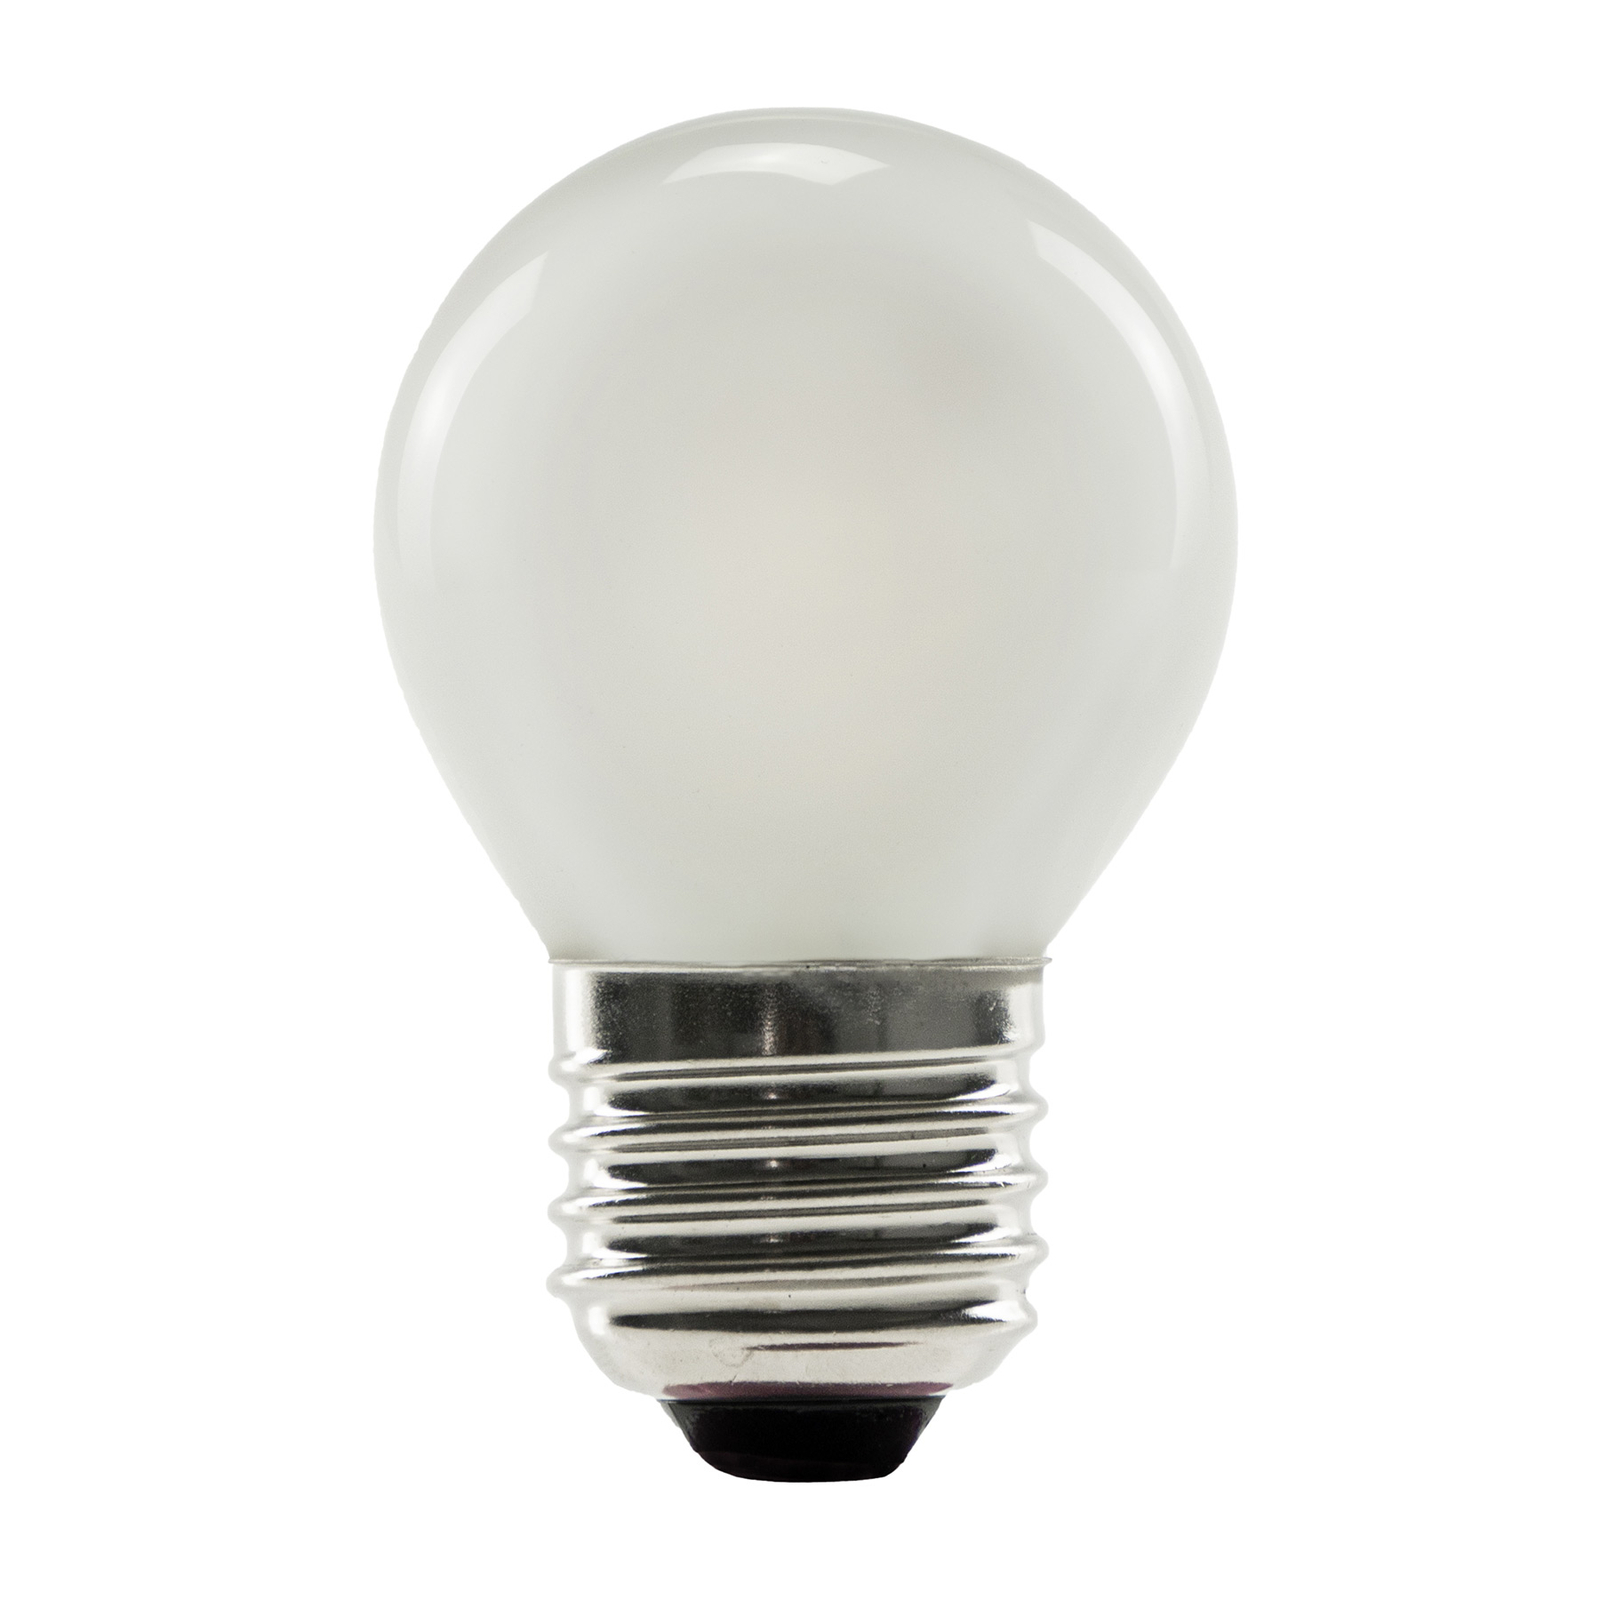 SEGULA LED-Lampe 24V E27 3W 927 ambient dimm matt